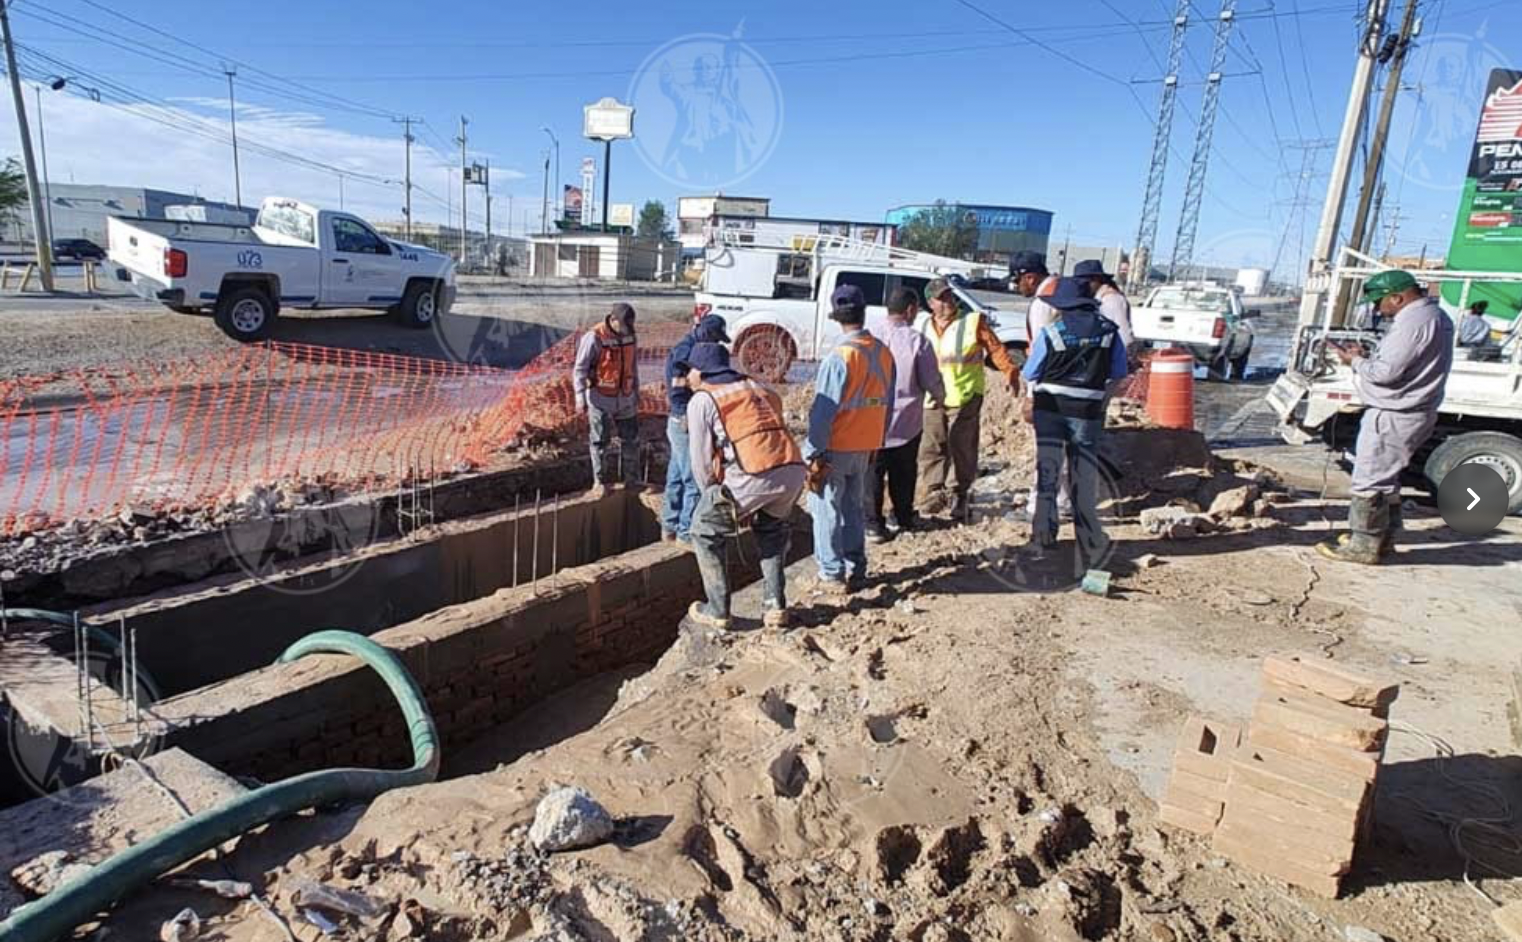 Chihuahua- Sin servicio de agua por reparación de fuga en ‘Las Torres’ (El Diario)